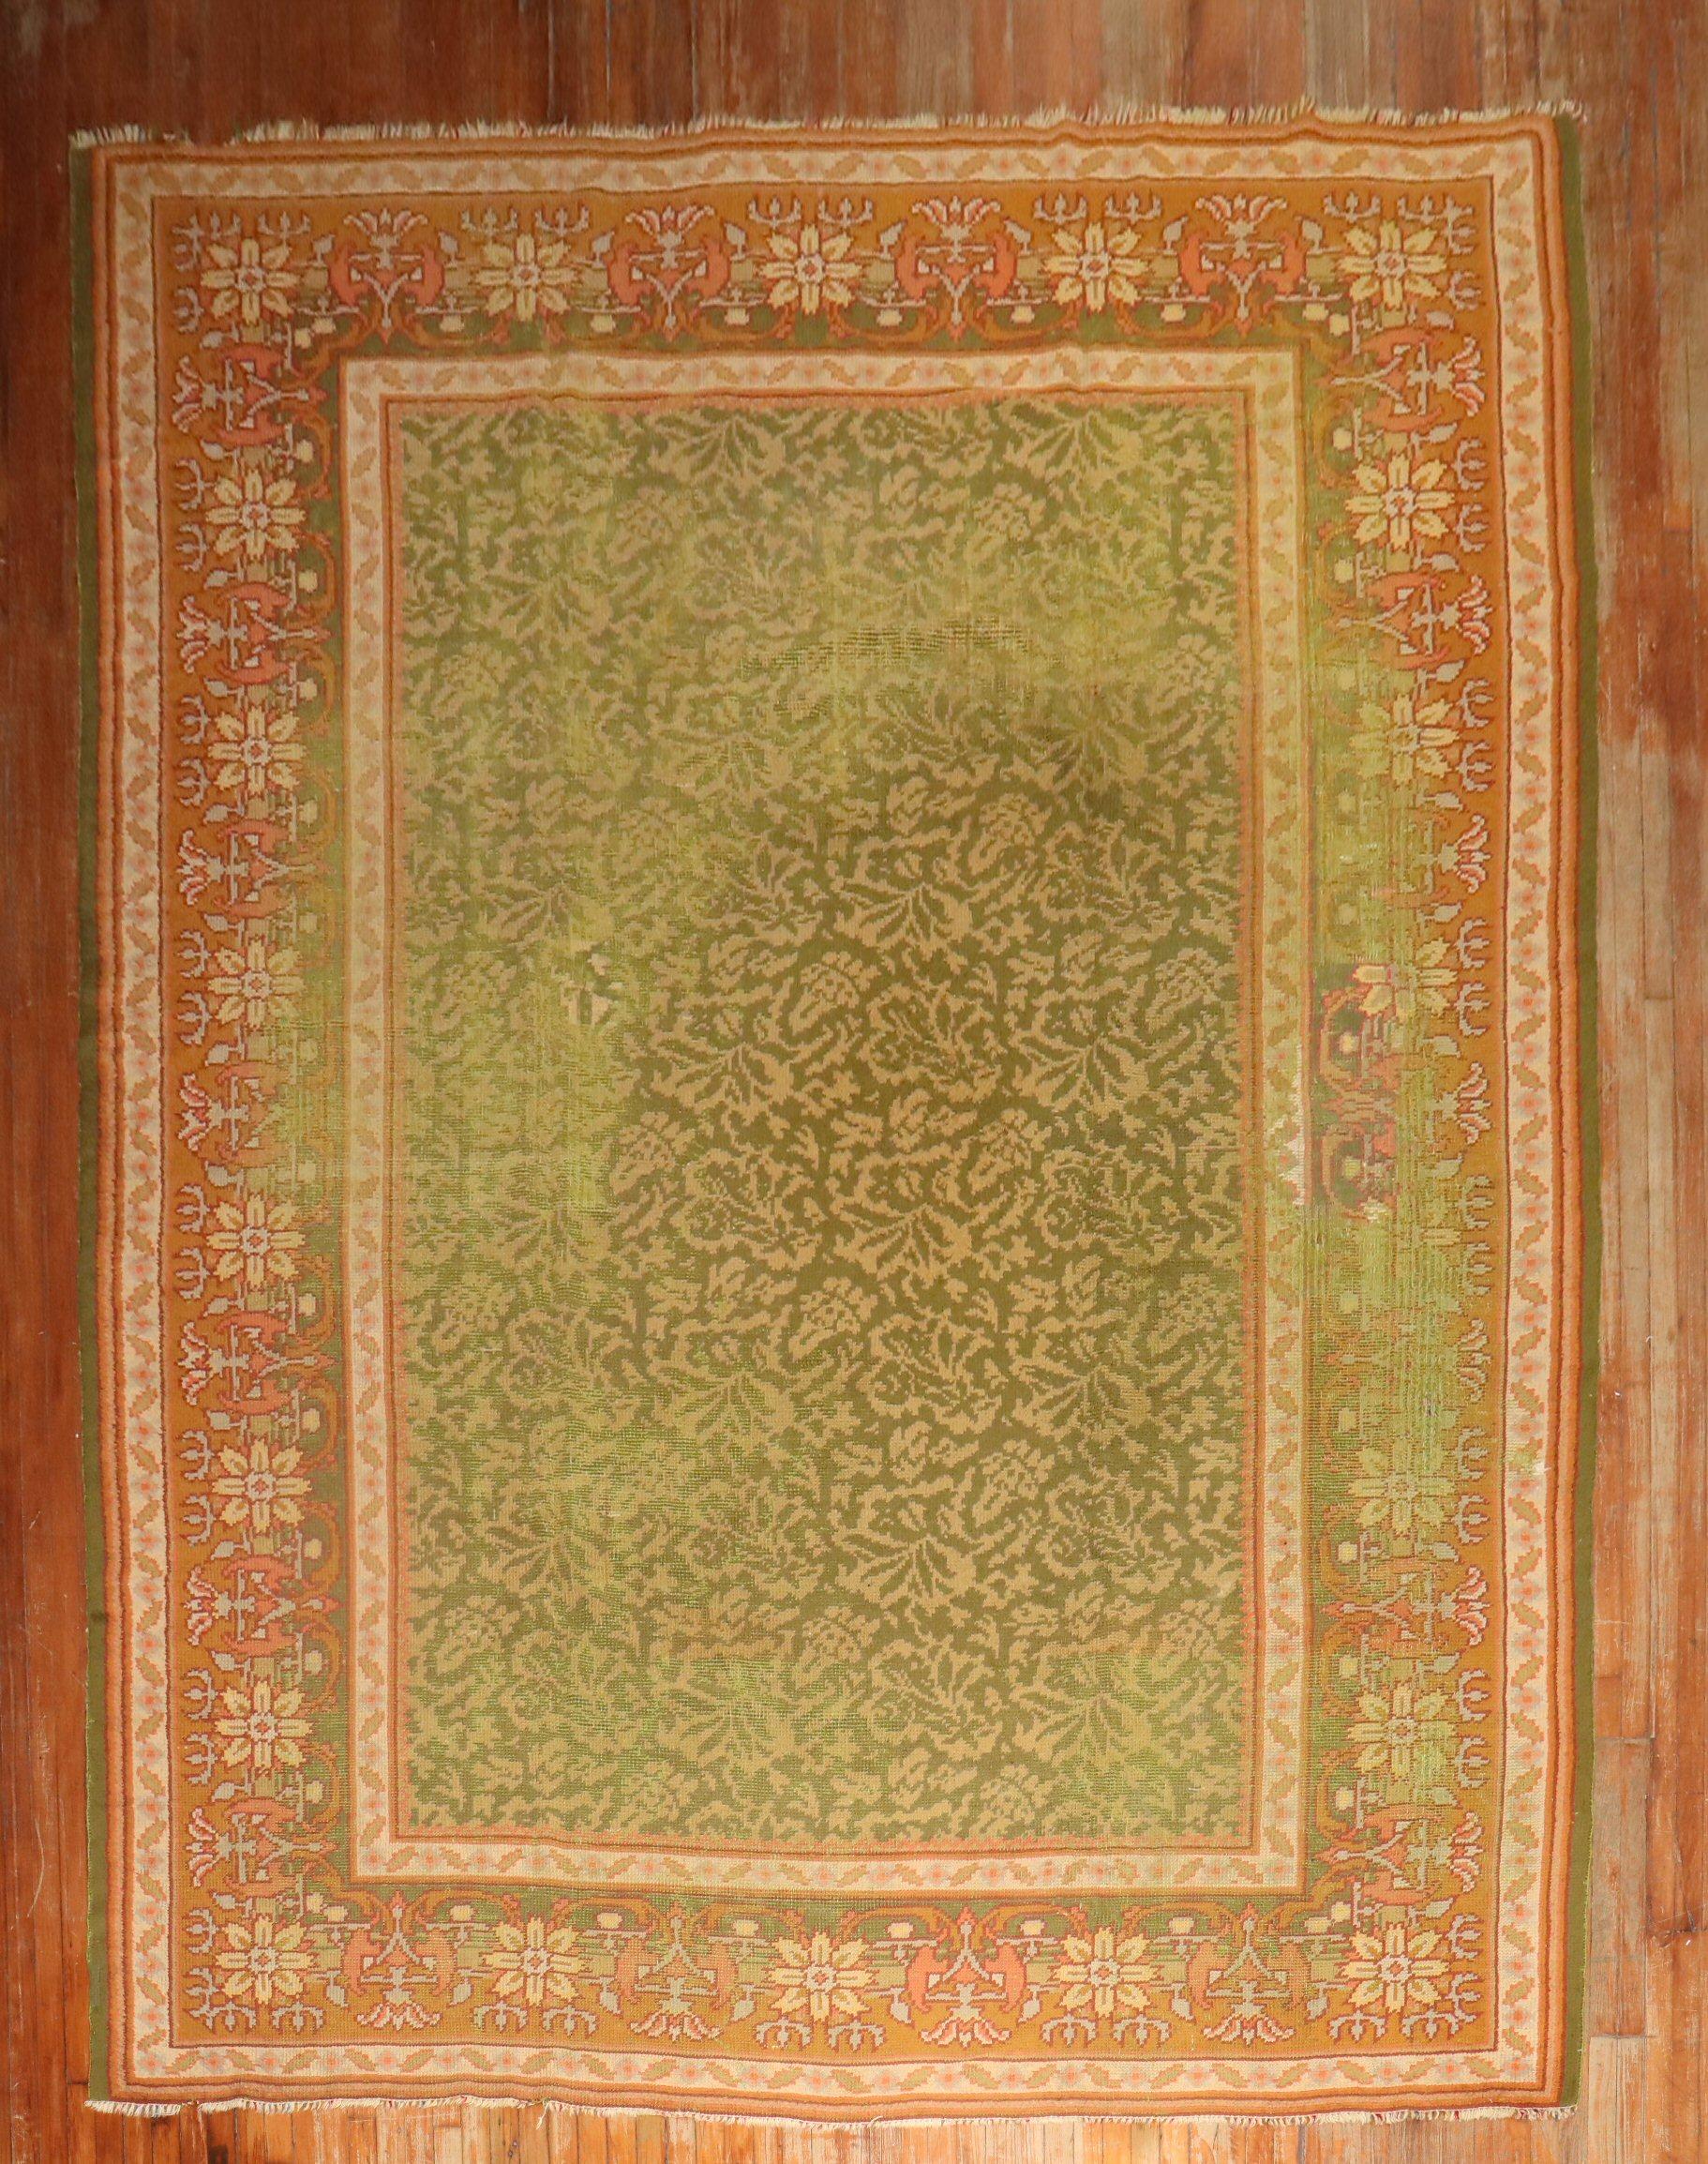 ein irischer Donegal-Teppich aus dem frühen 20. Jahrhundert in Apfelgrün, beschädigt und verblichen

10' x 14'
